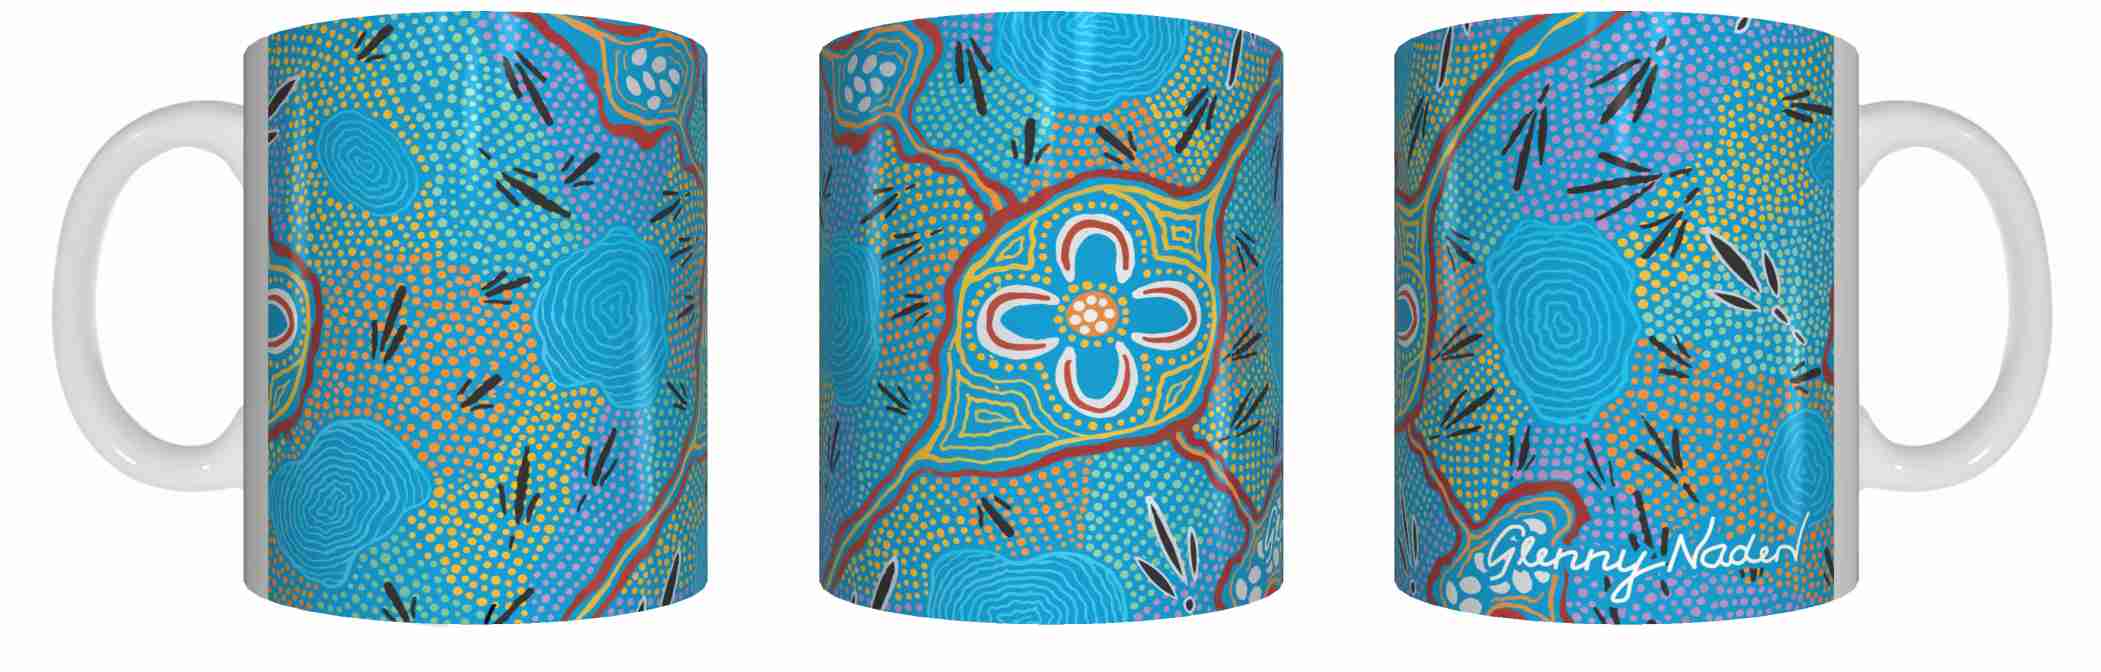 Bush Tucker Gathering - Aboriginal Design Ceramic Mug in Gift Box